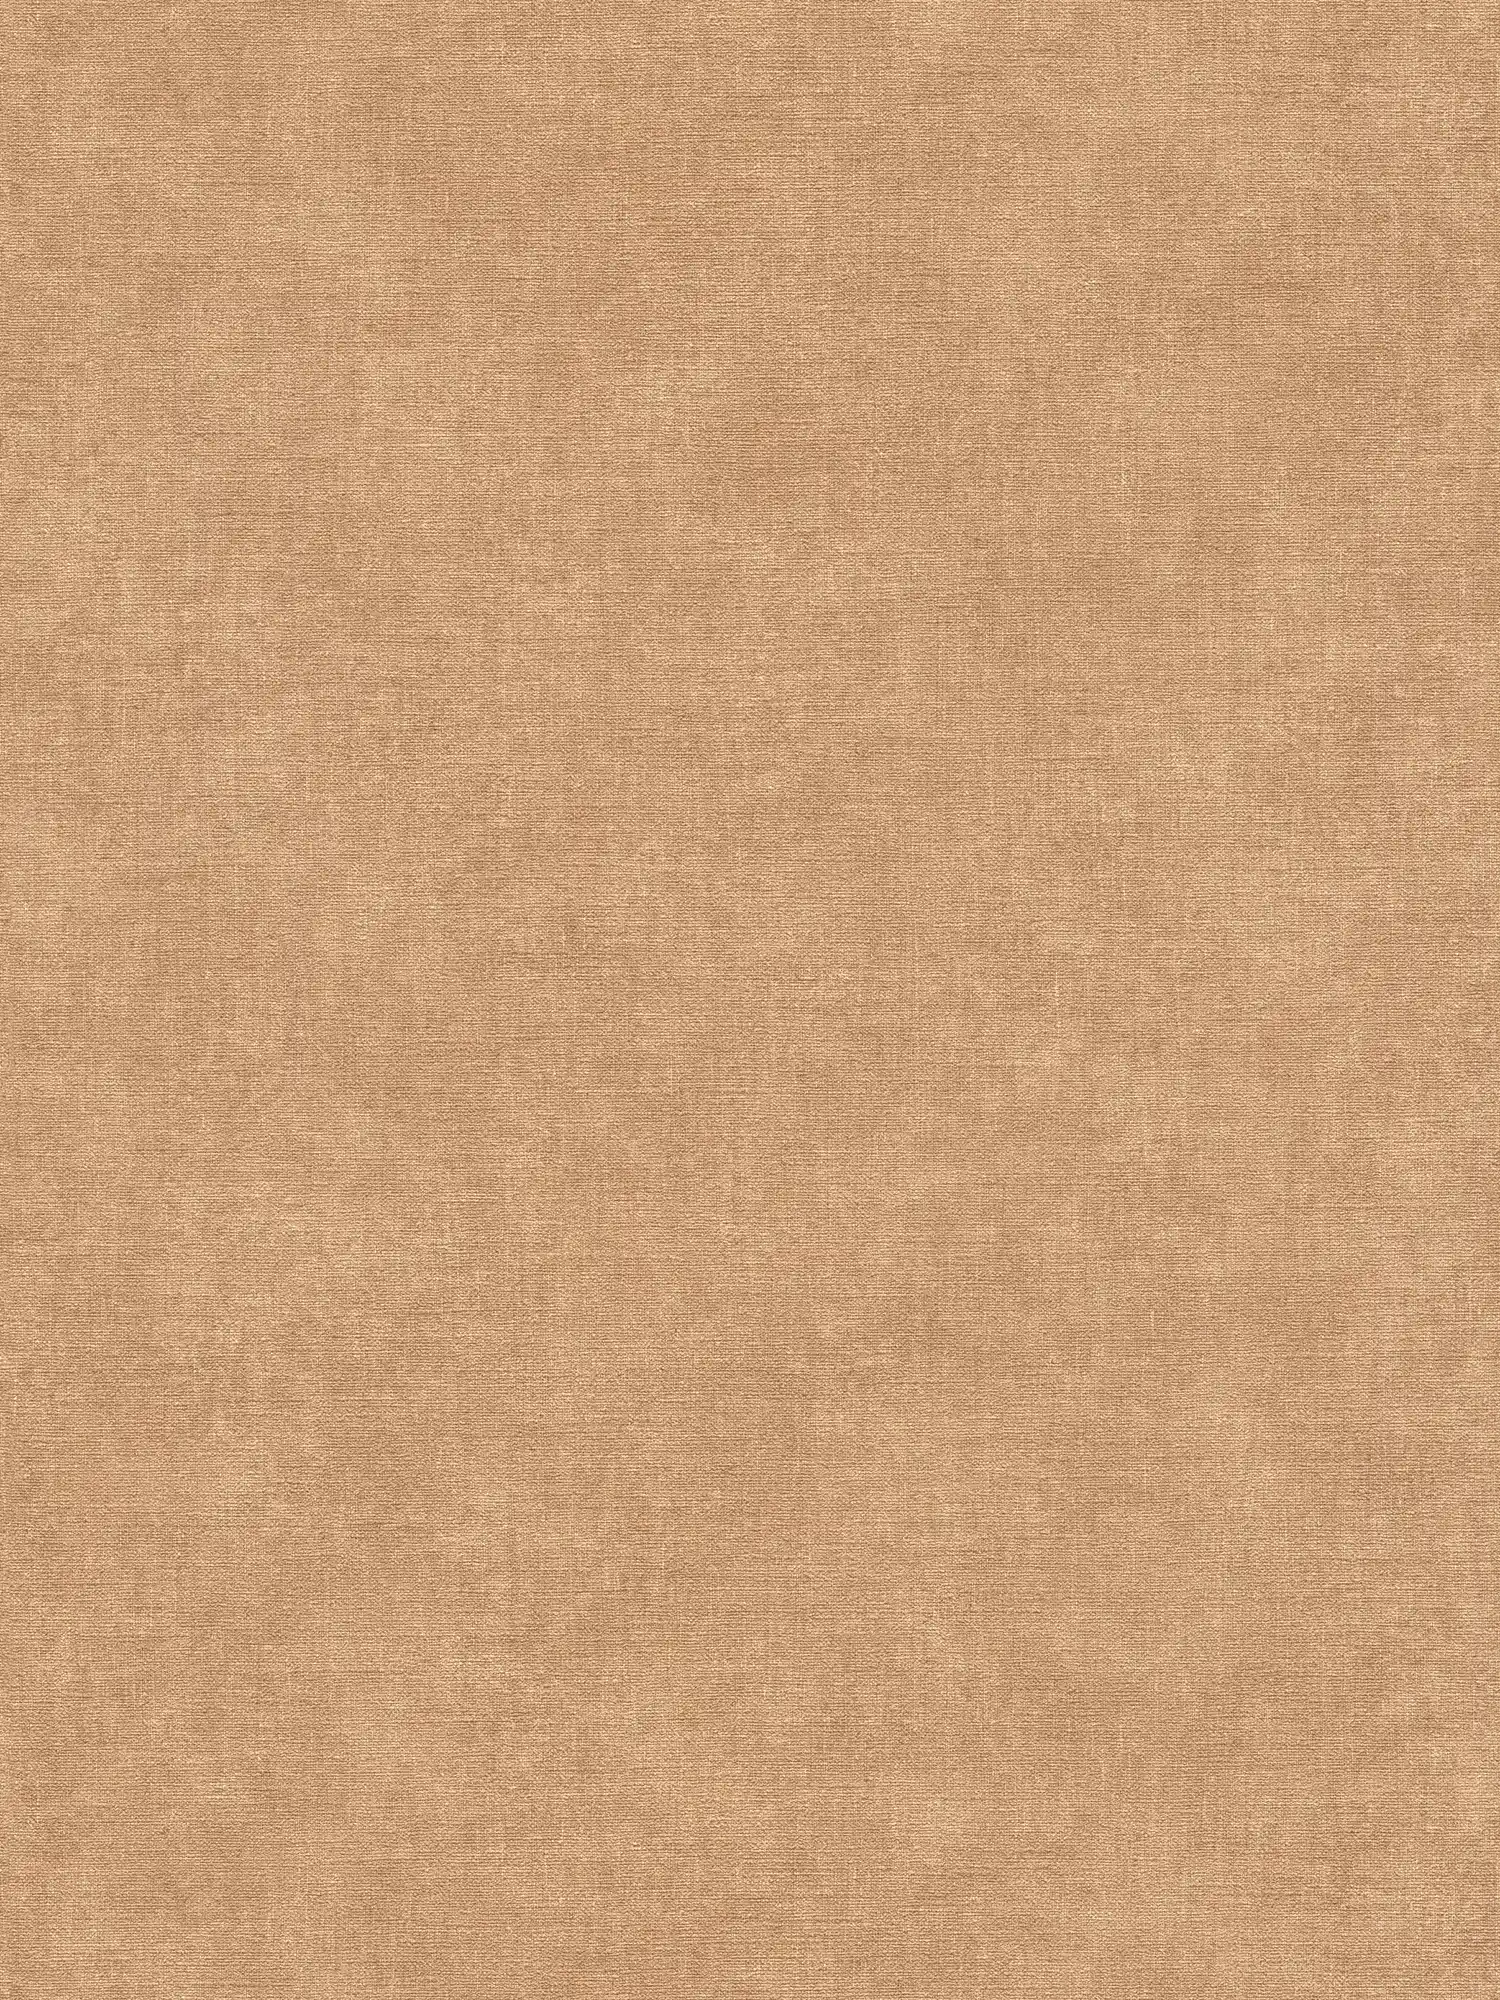 Eenheidsbehang met lichte textuur in textiellook - bruin, beige
